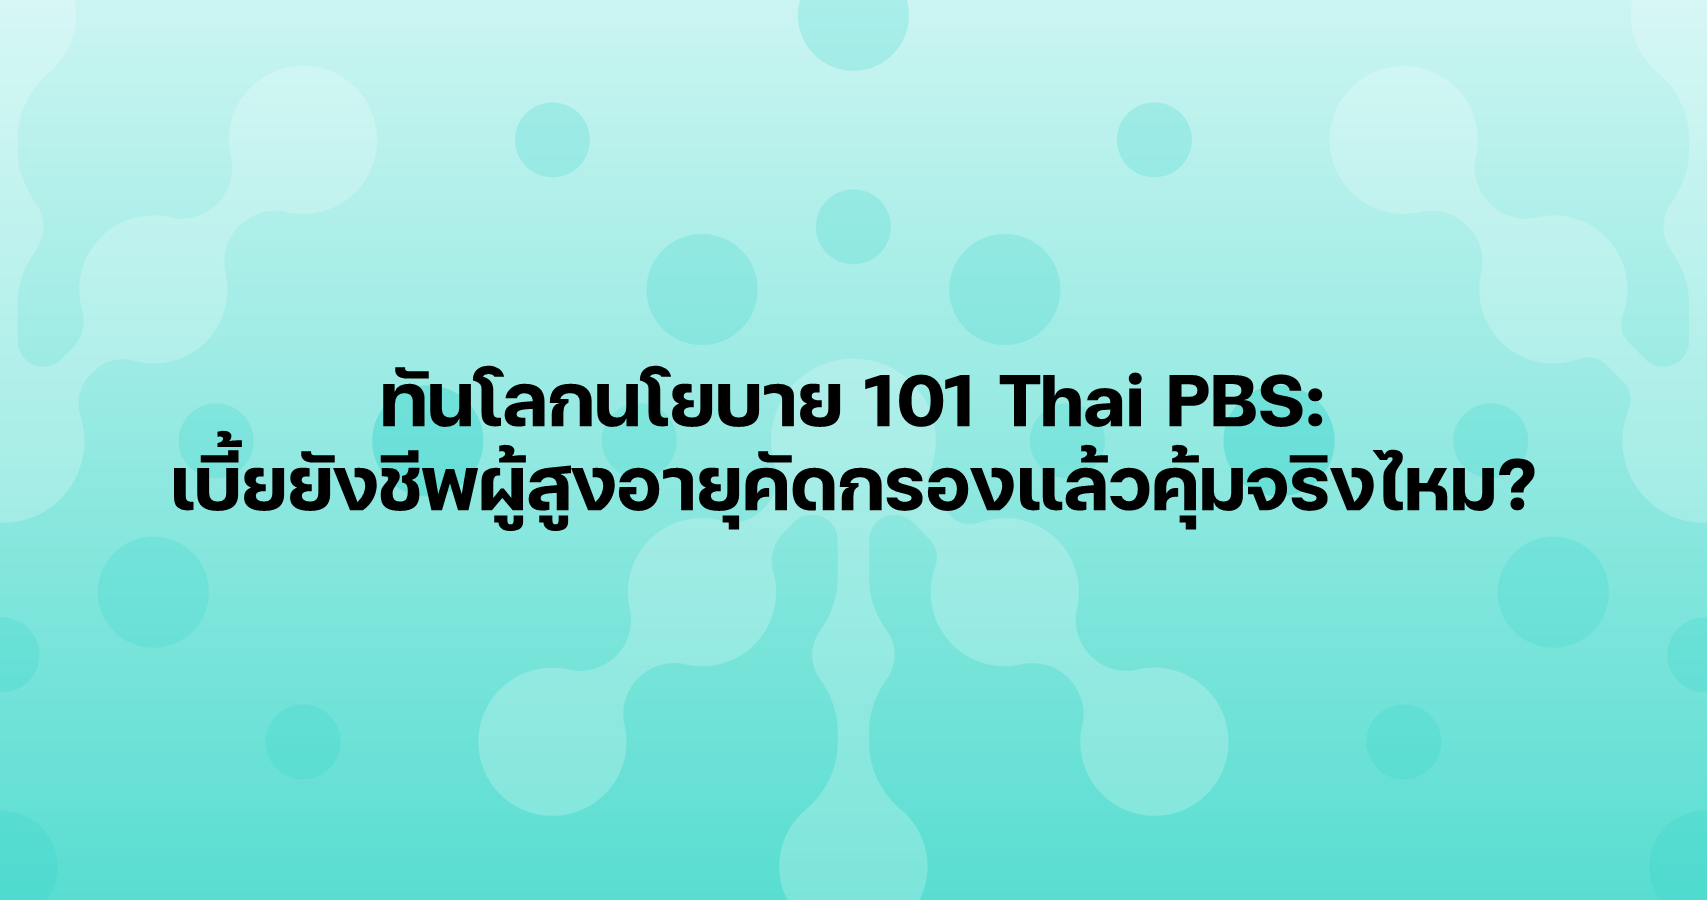 ทันโลกนโยบาย 101 Thai PBS: เบี้ยยังชีพผู้สูงอายุคัดกรองแล้วคุ้มจริงไหม?